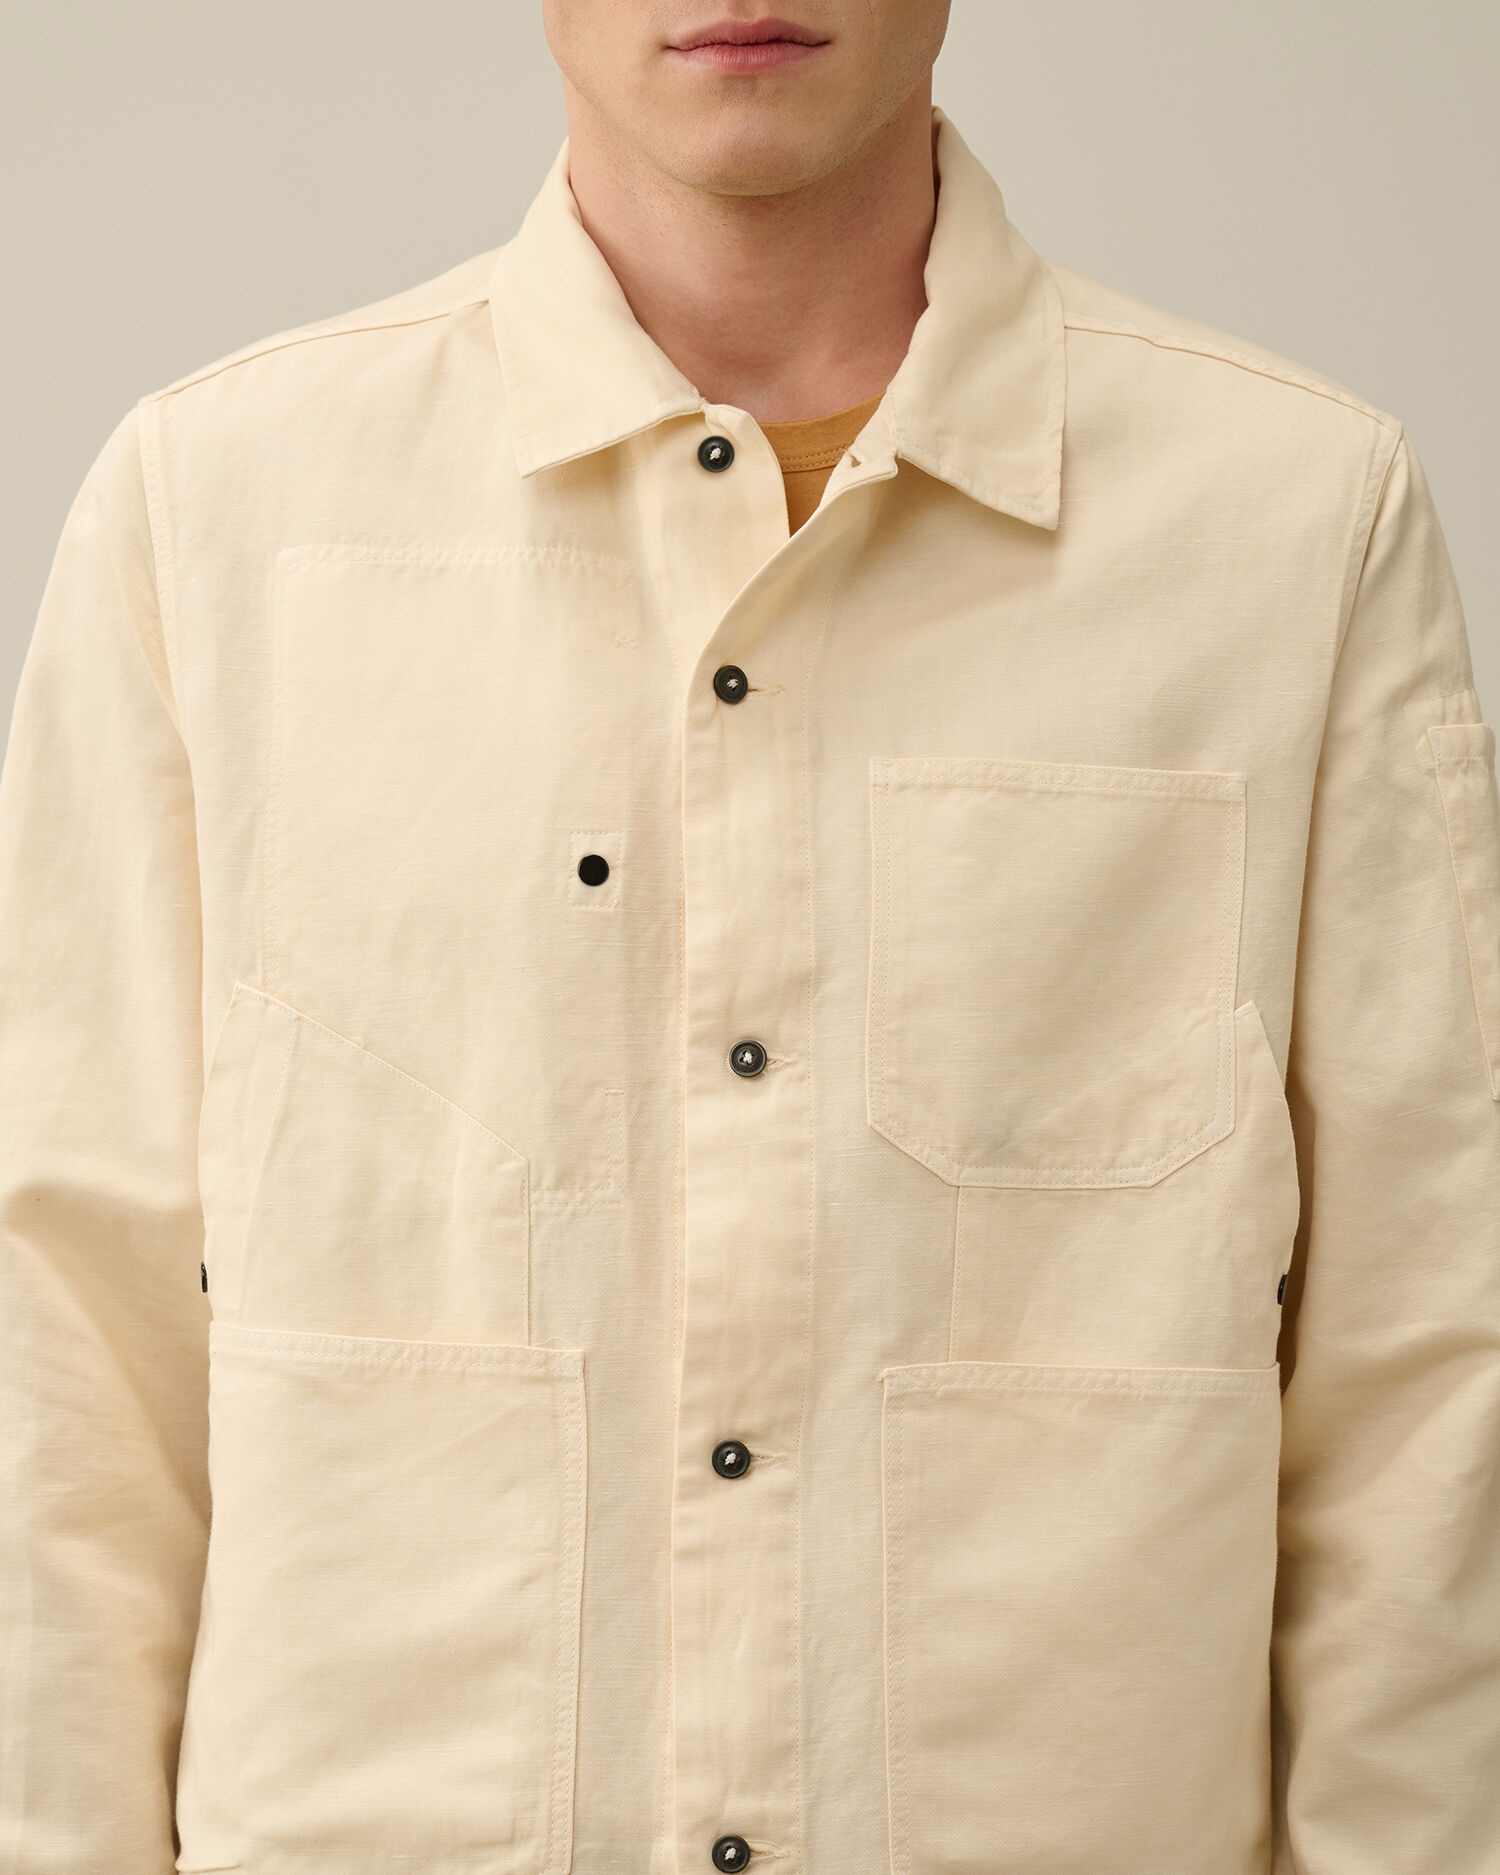 Cotton/Linen Overshirt - 5